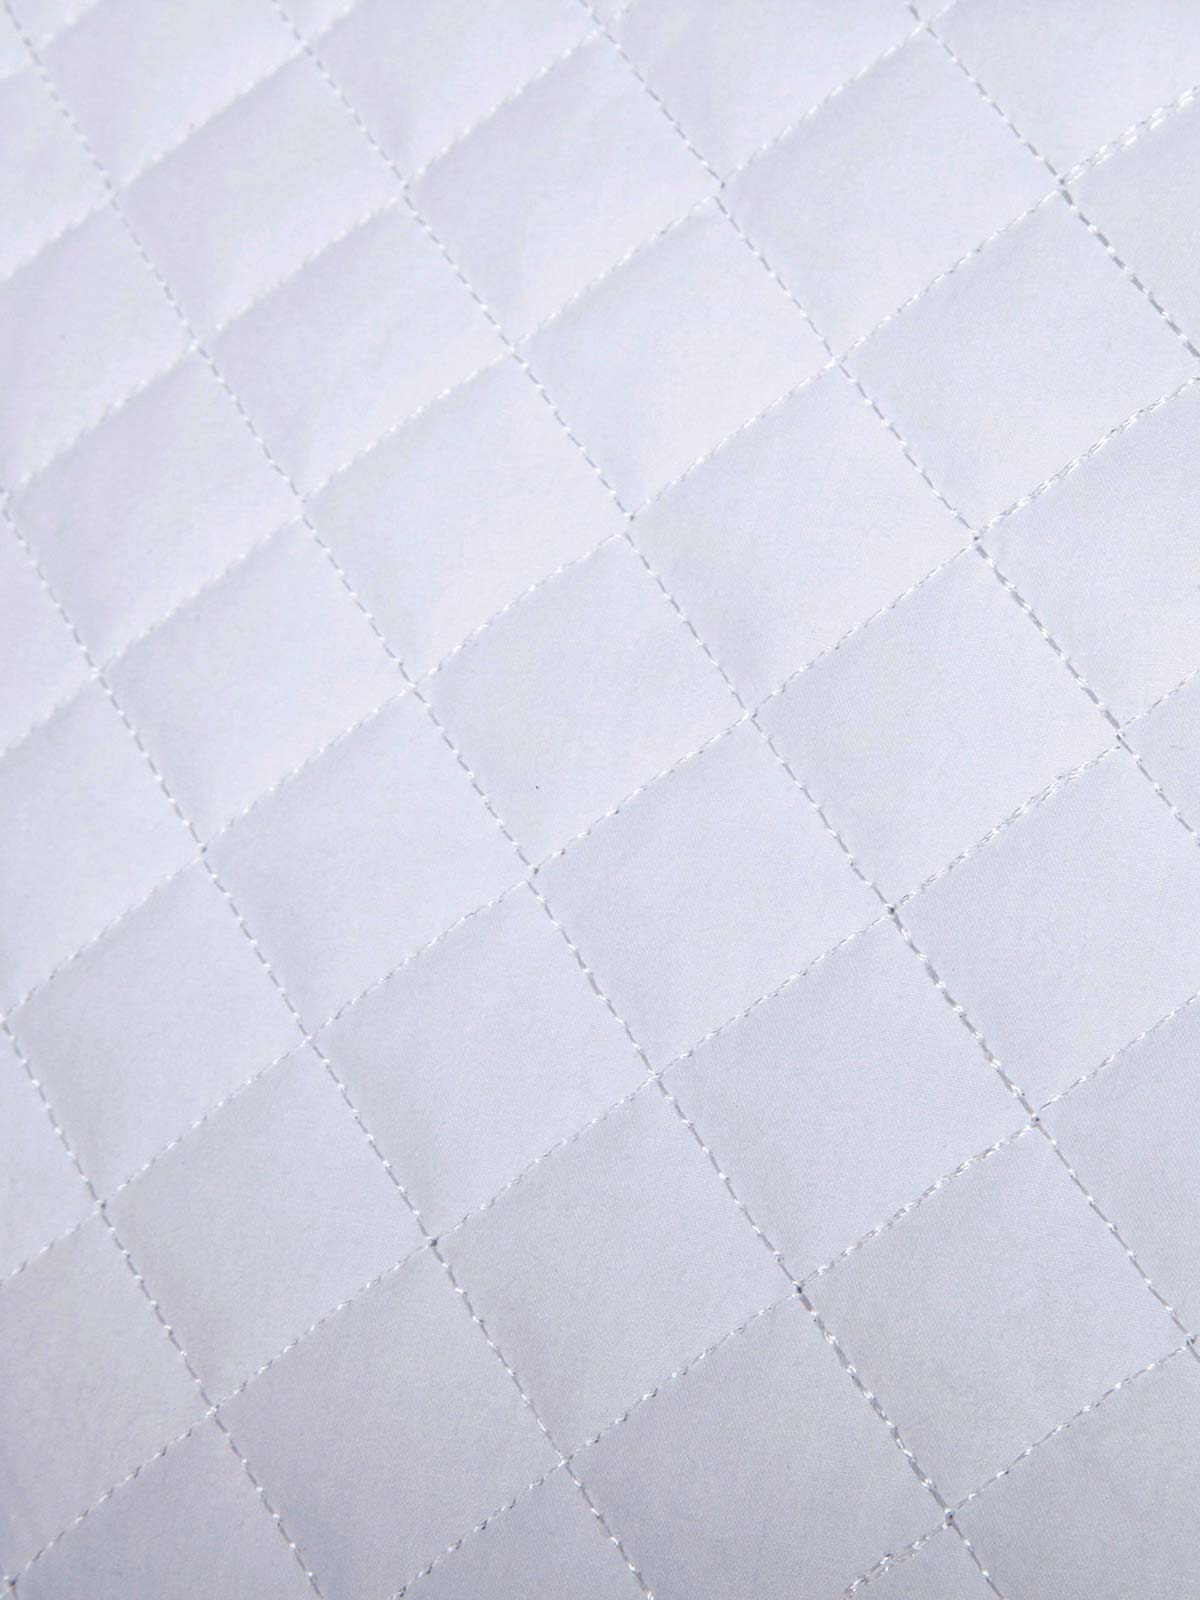 Buckwheat Cervical Support Pillow – Qbedding